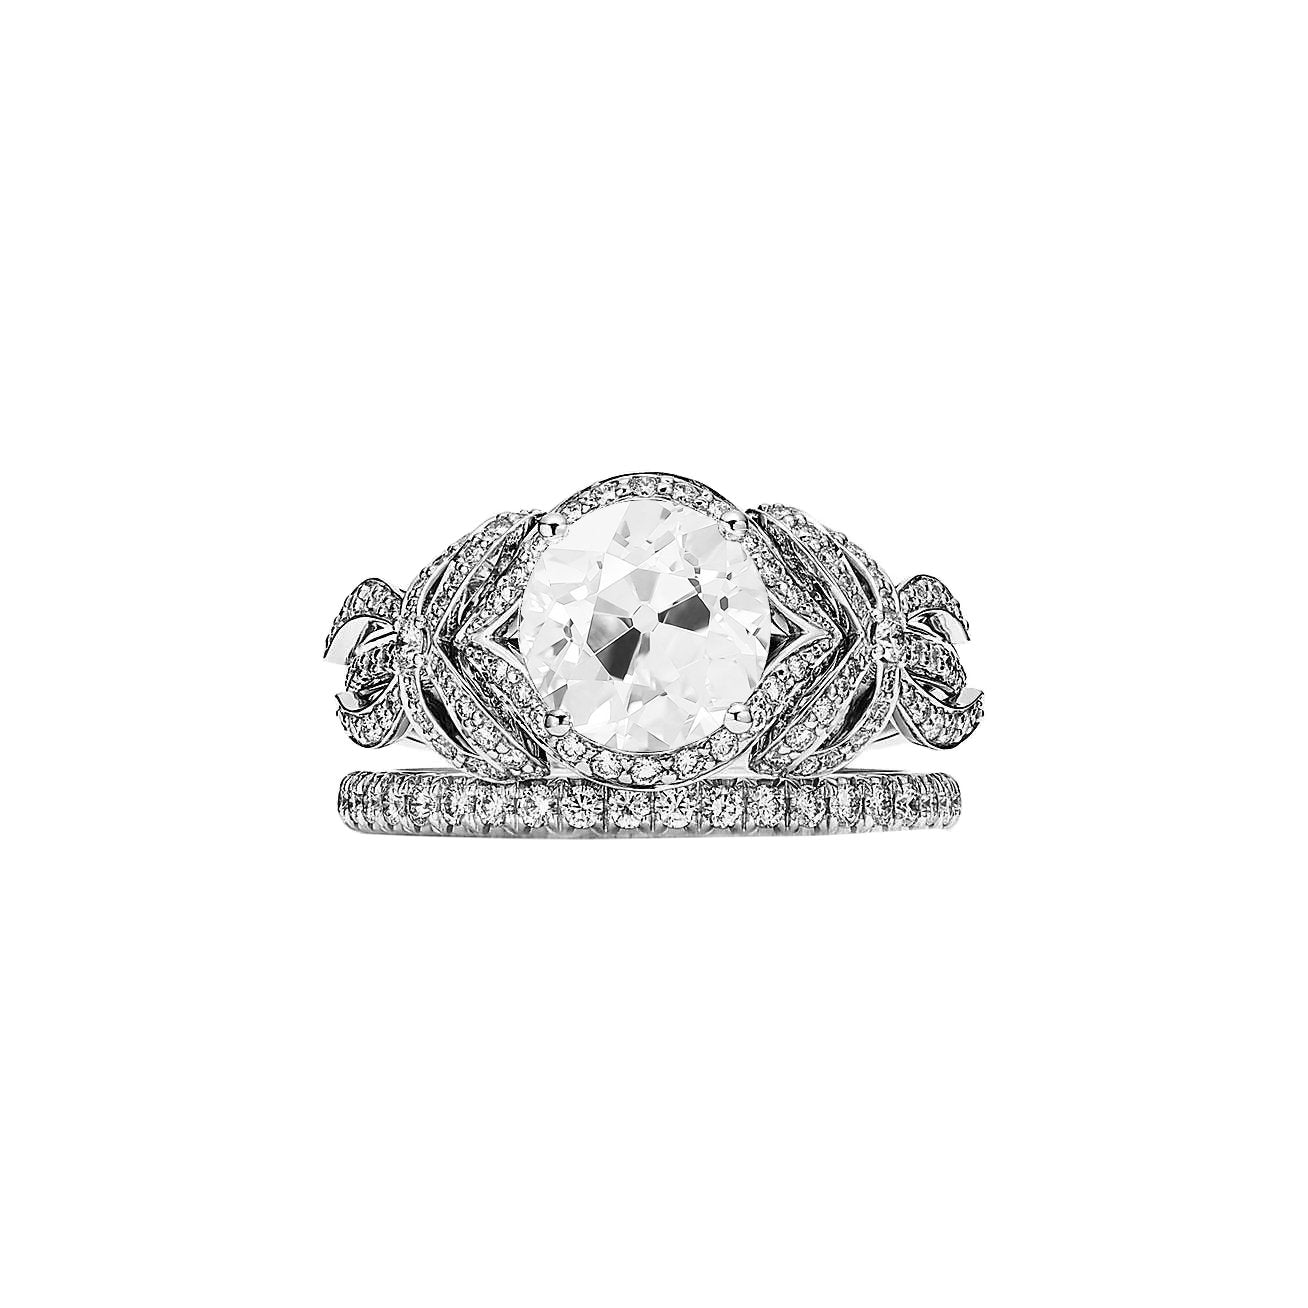 Fede nuziale incastonata con diamanti rotondi tagliati a nastro stile 3.25 carati - harrychadent.it